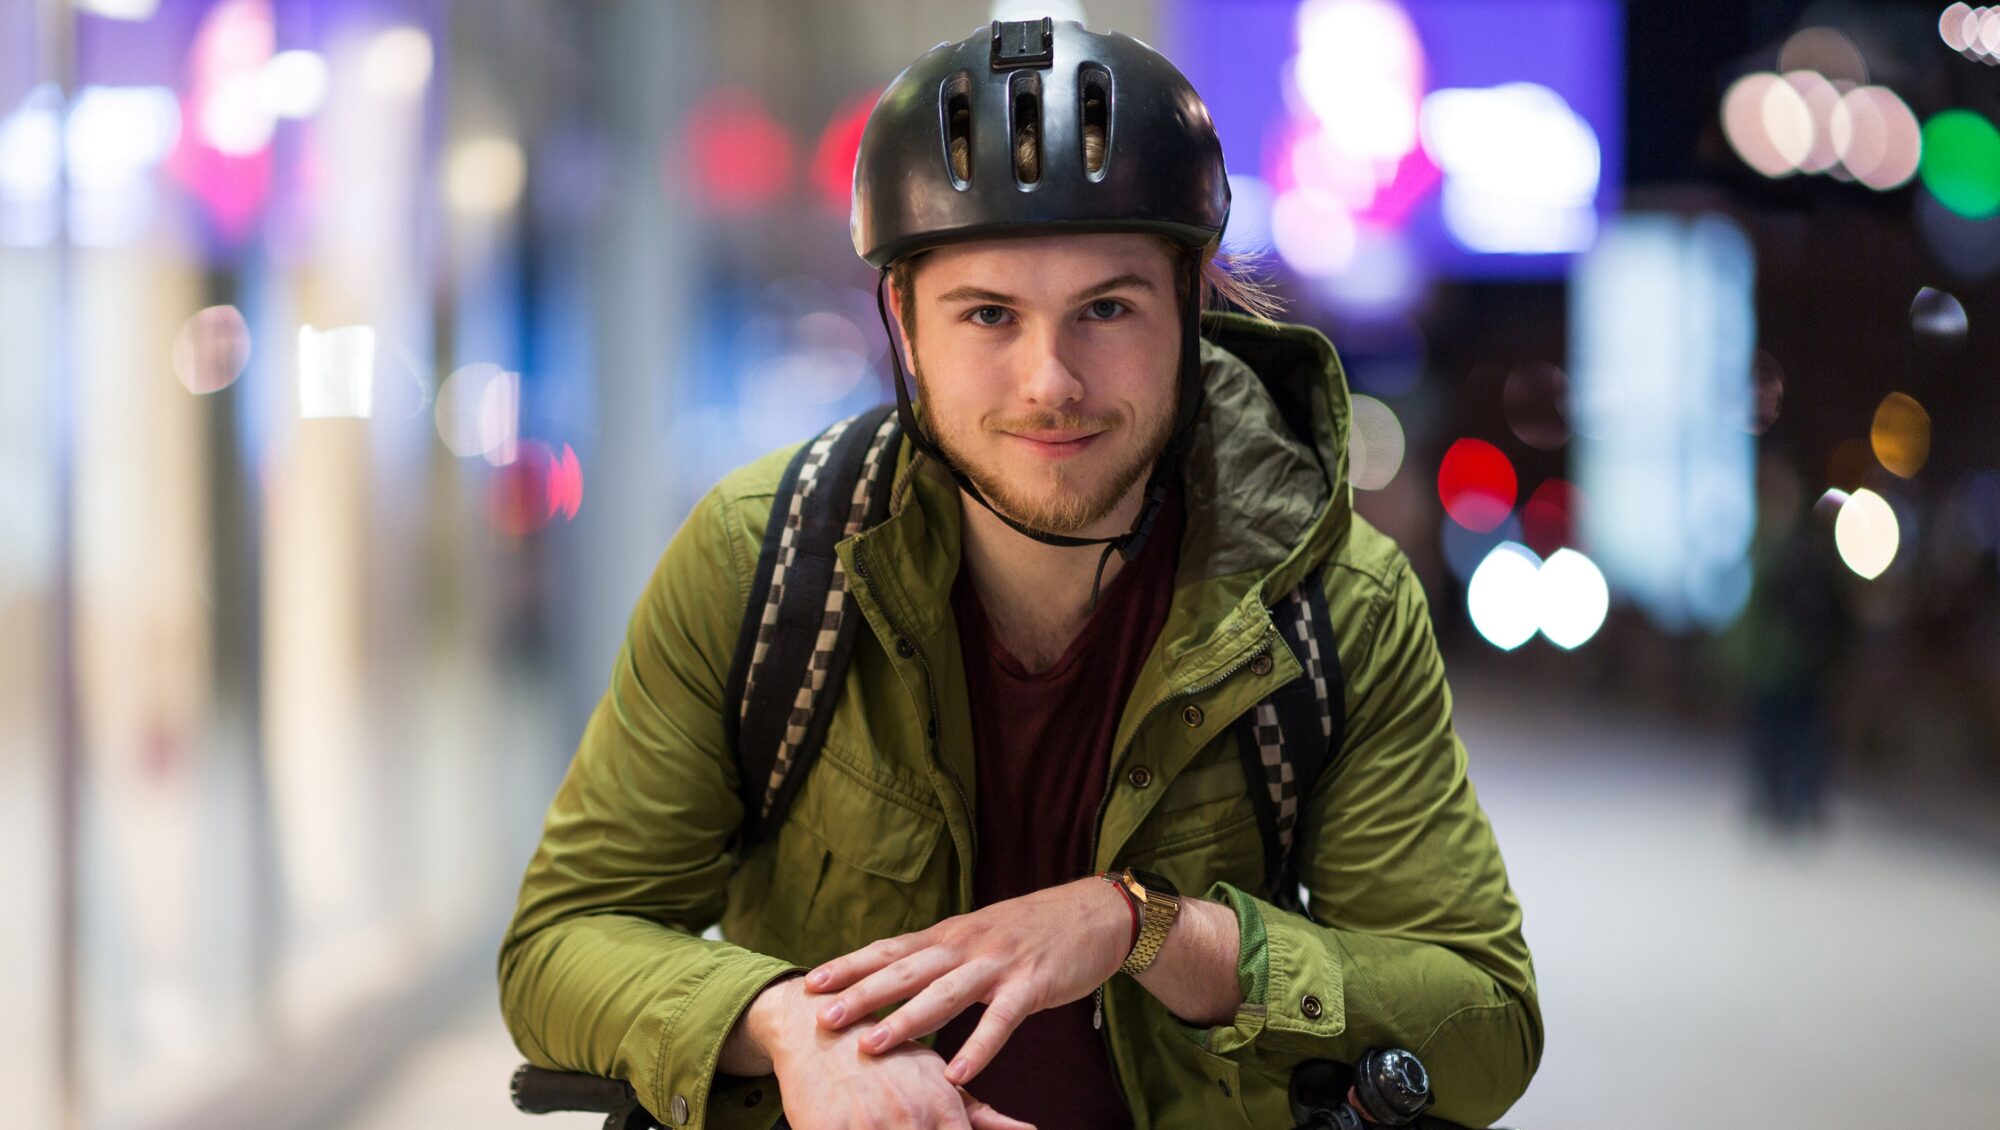 Vier op de vijf jongeren willen geen fietshelm dragen